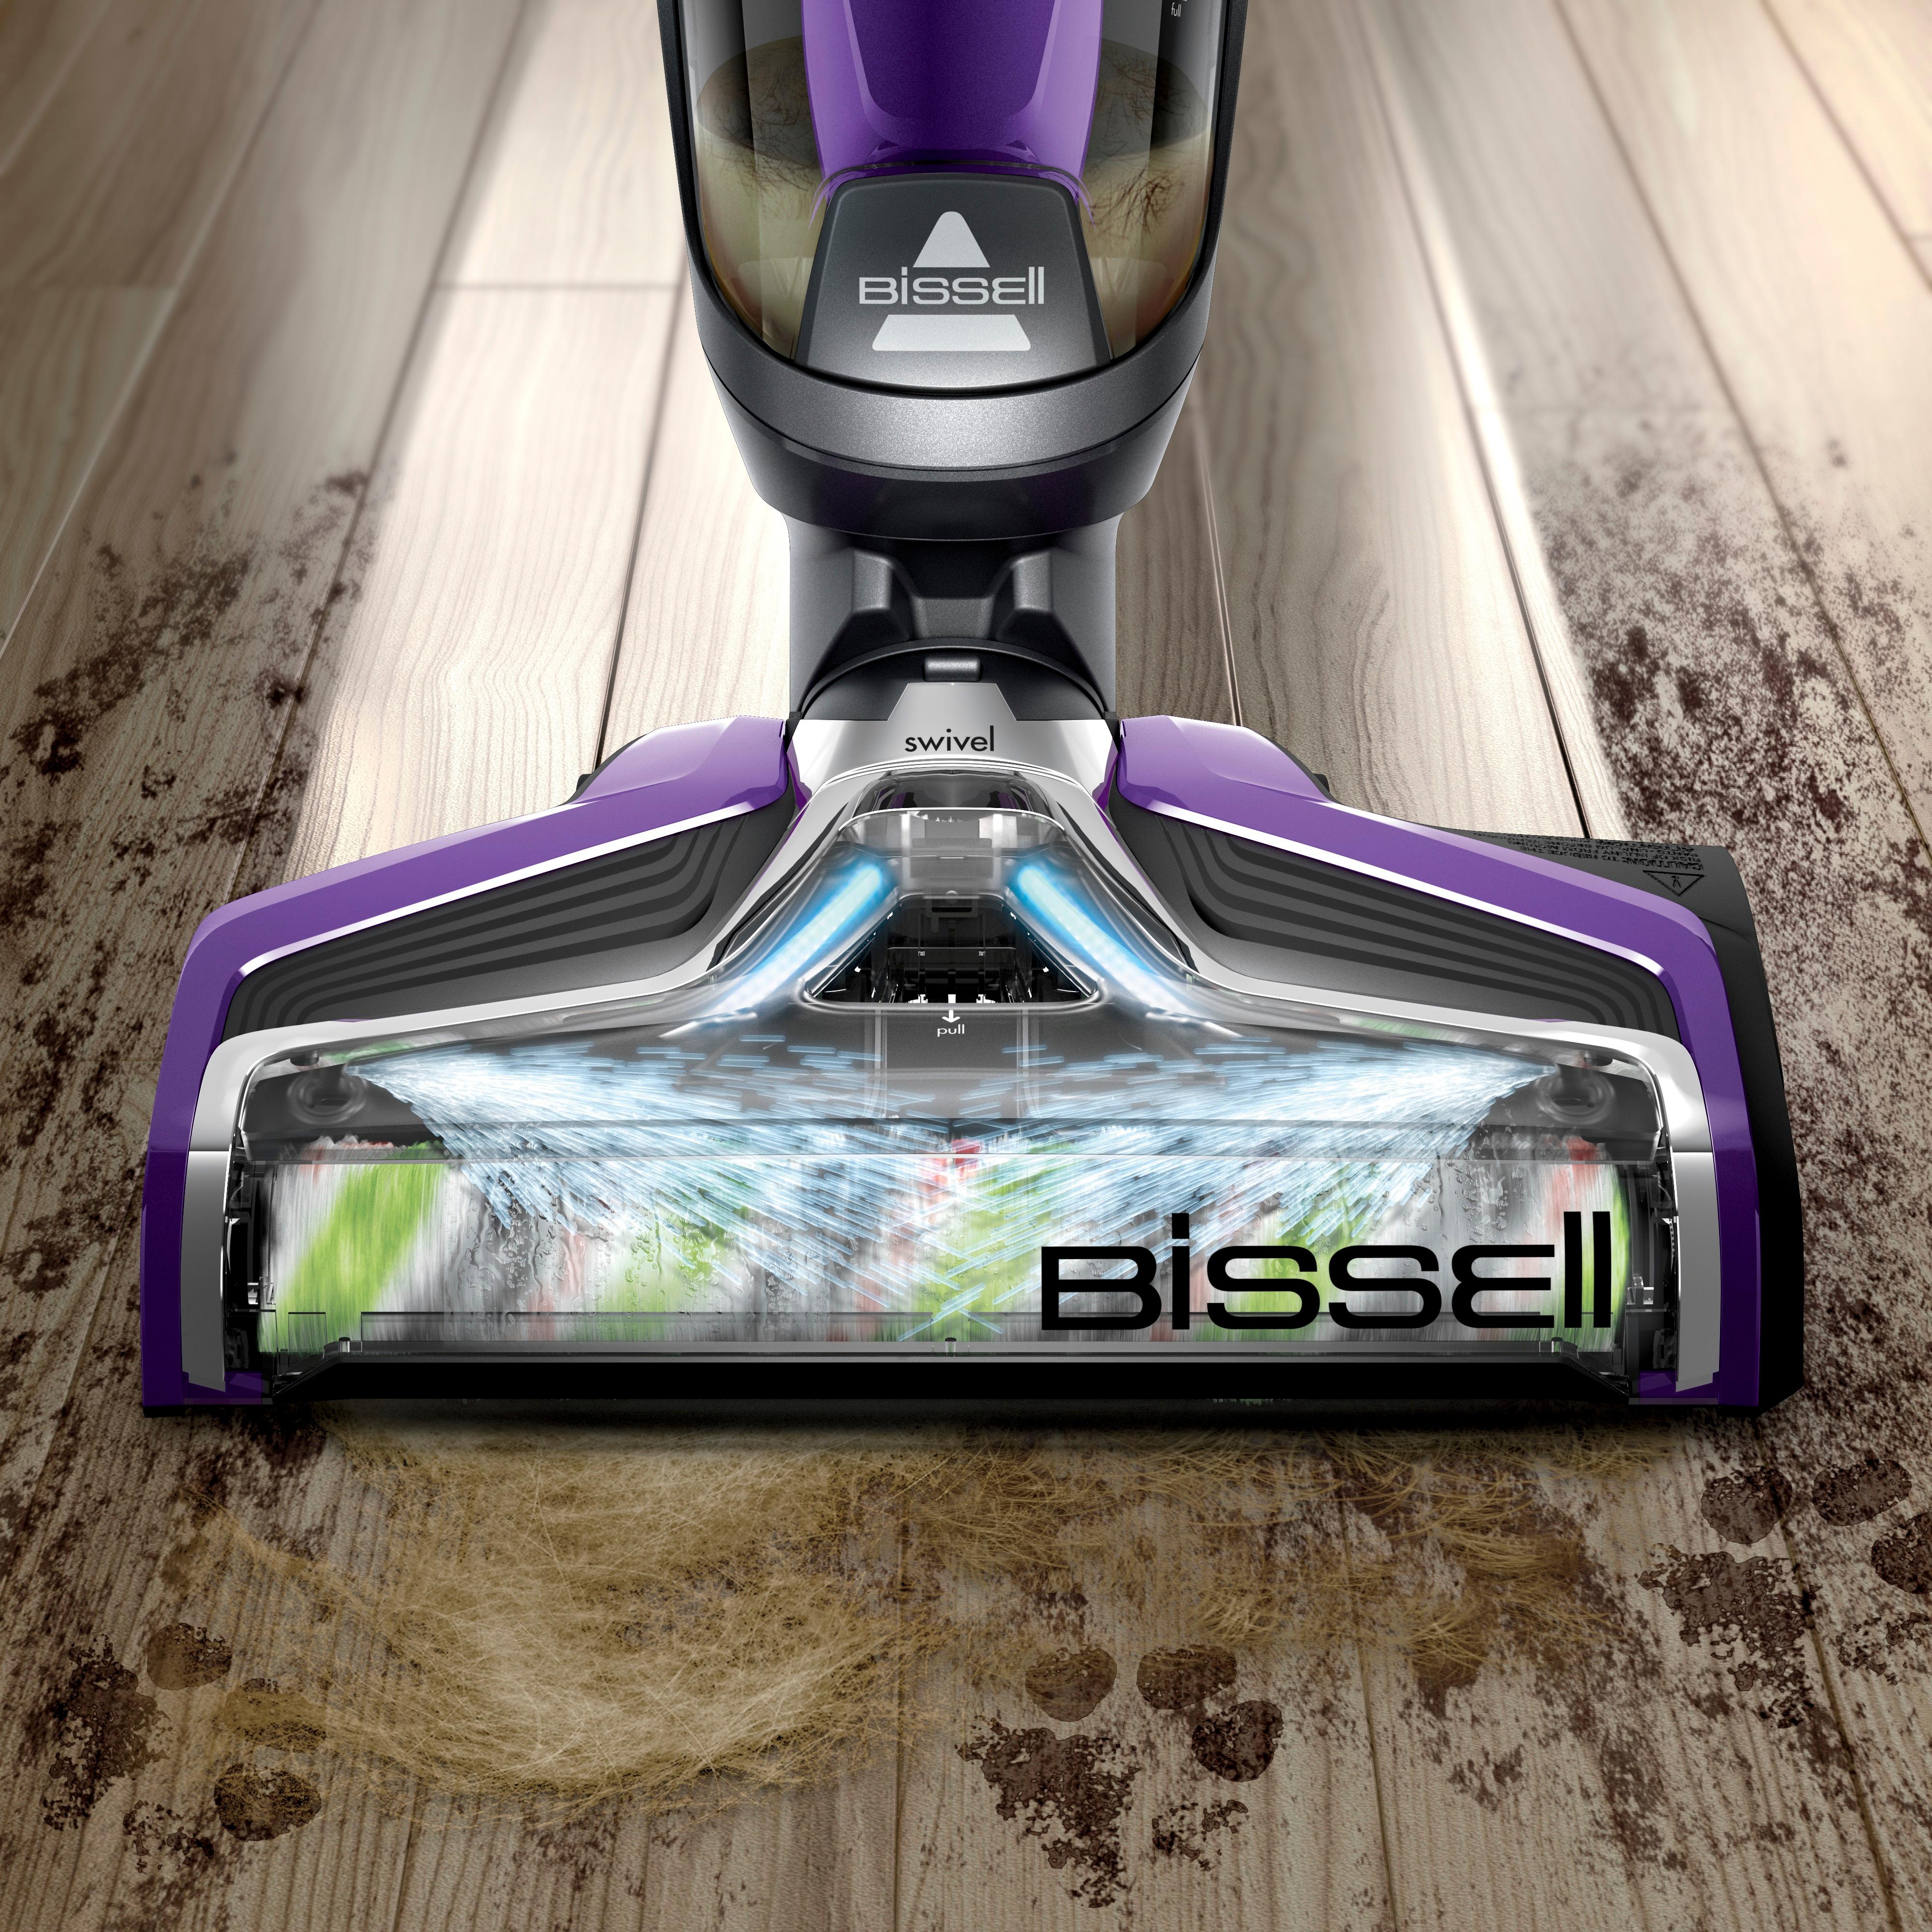 Bissell – CrossWave Pet Pro